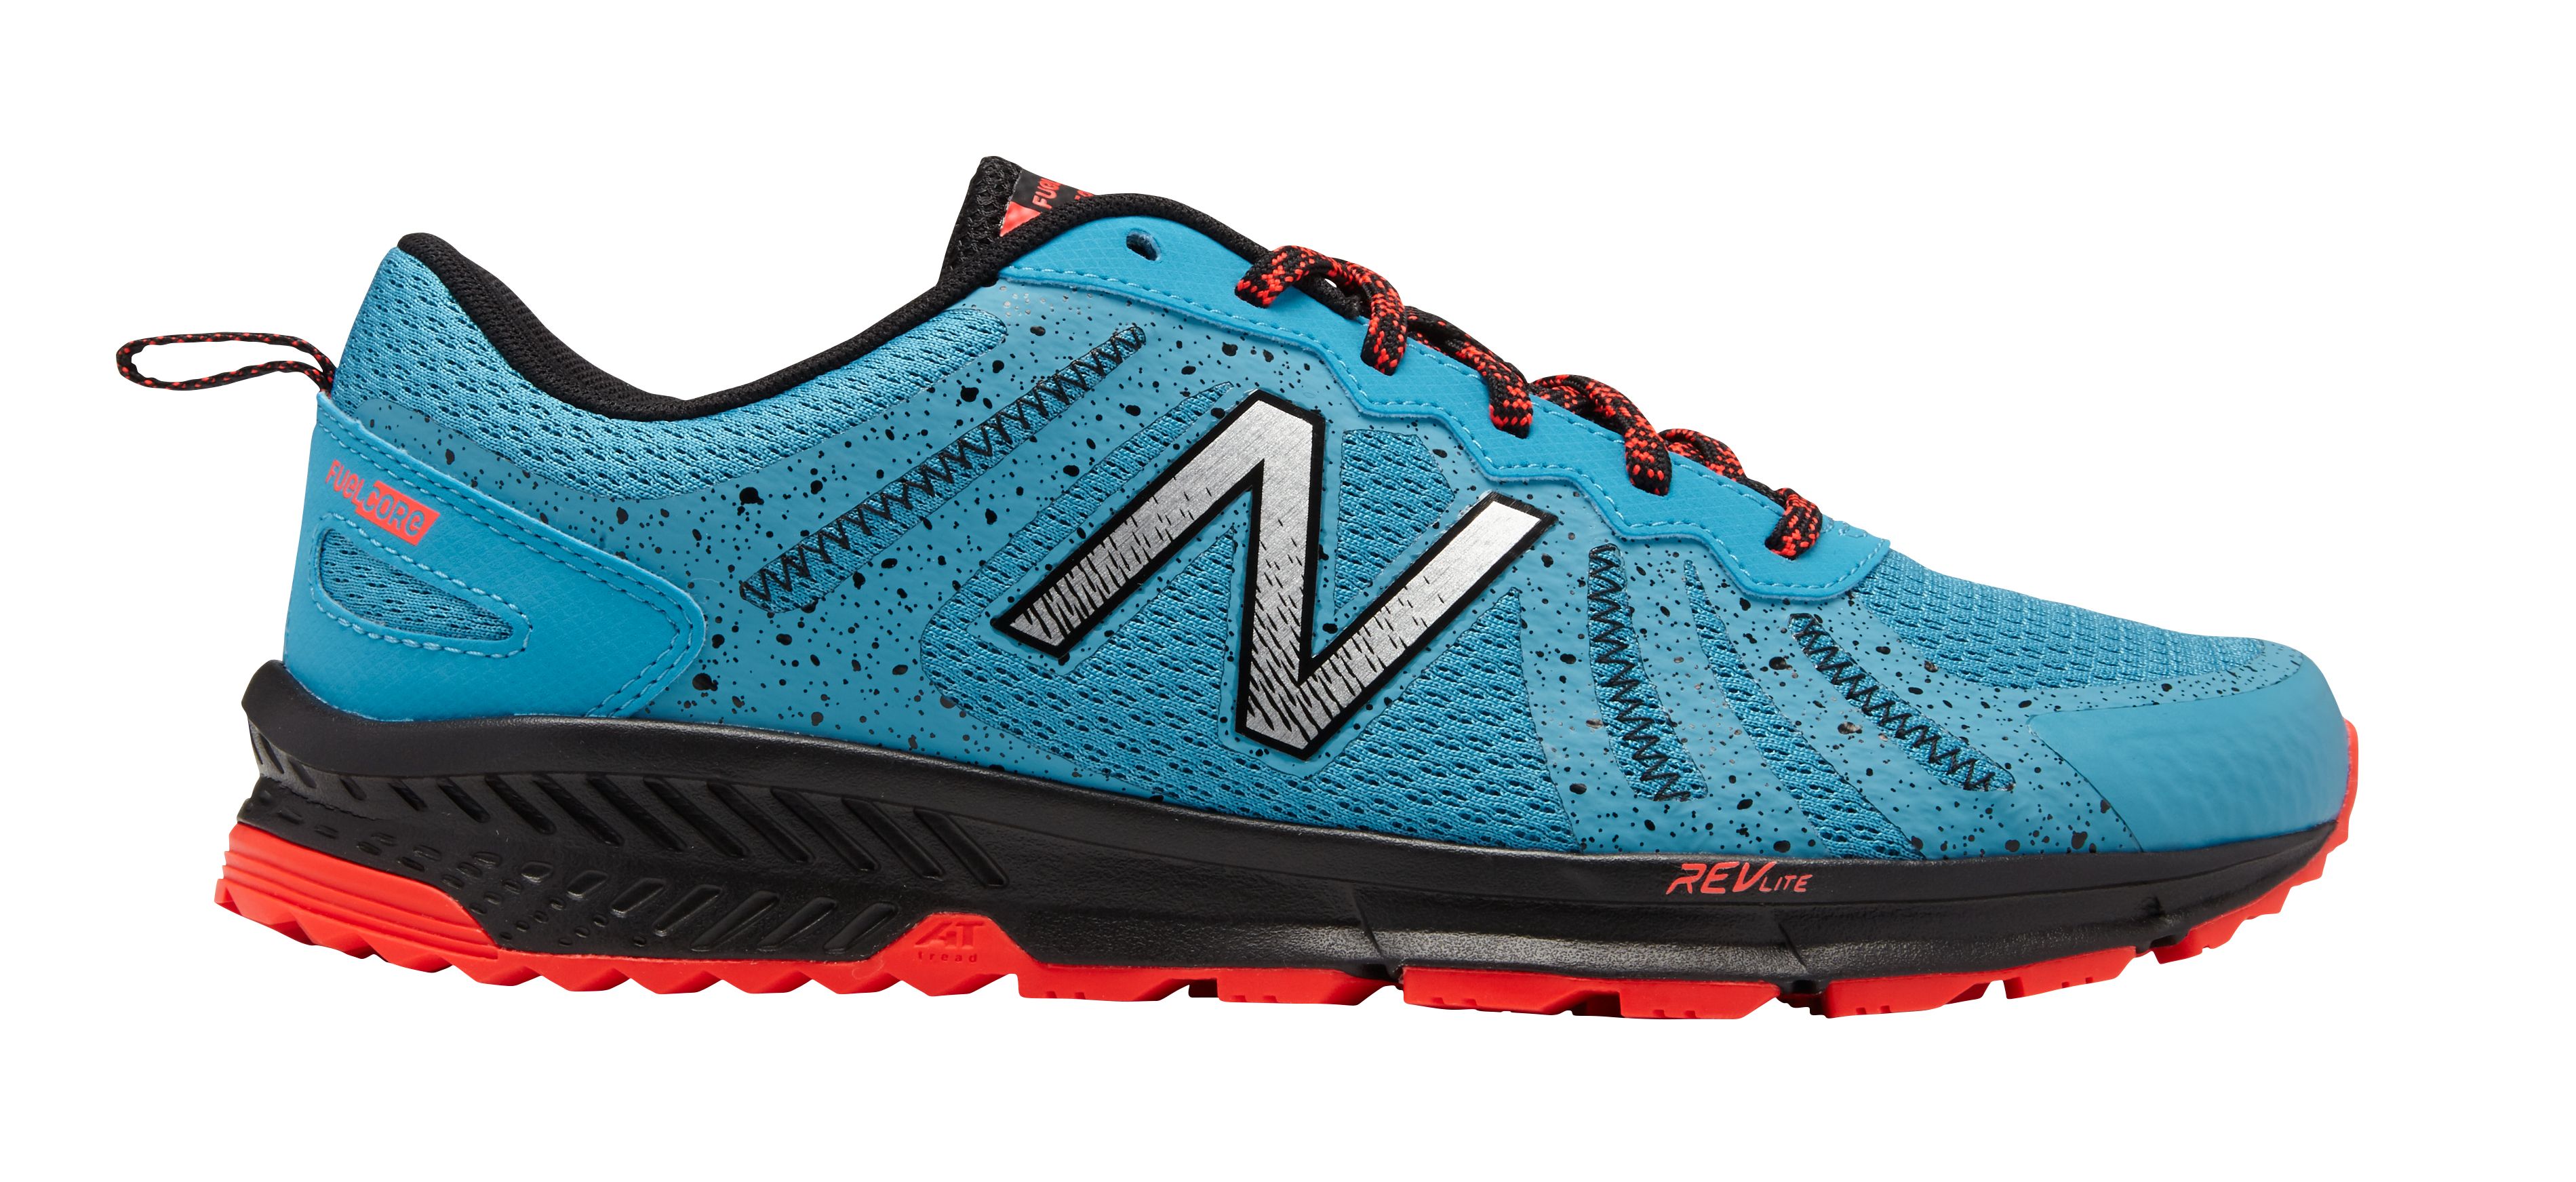 Fingerhut - New Men's Trail 590v4 Running Shoe